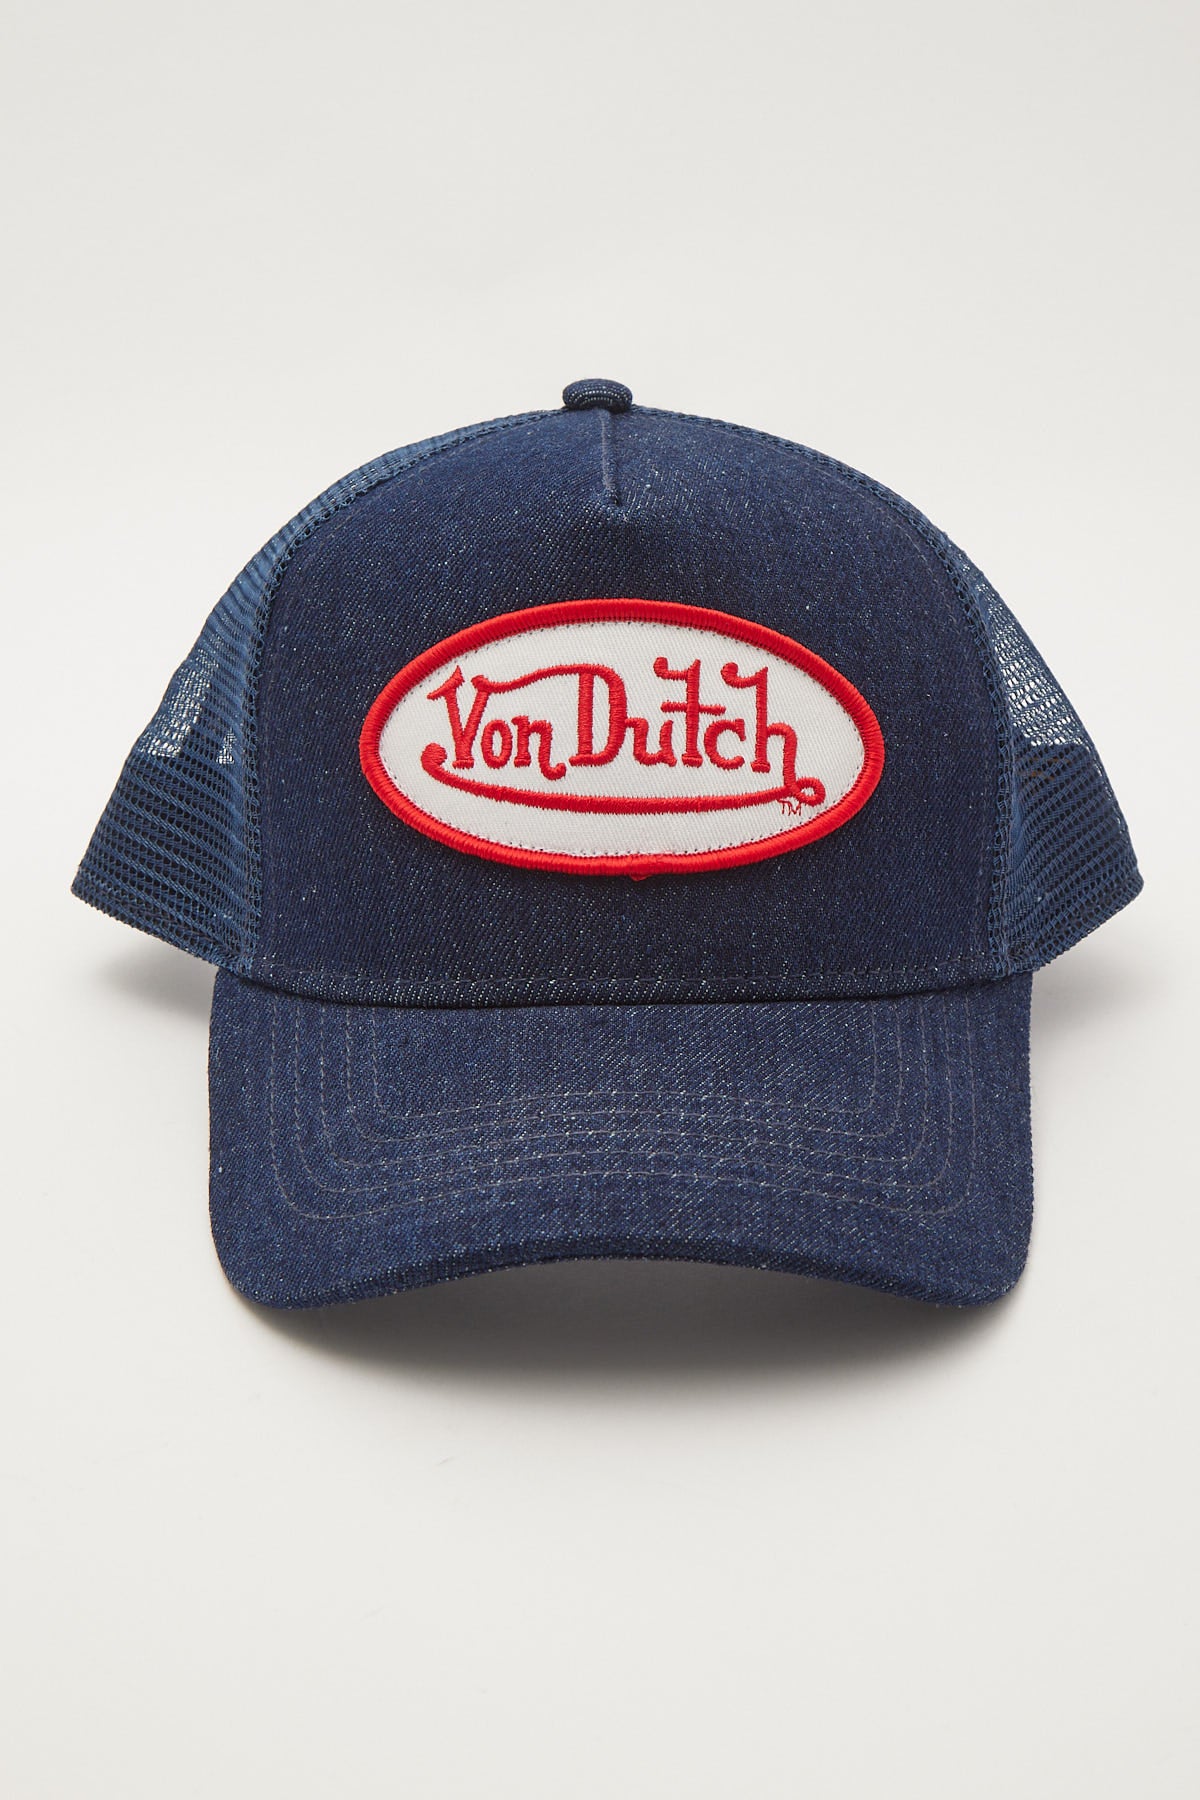 Von Dutch Dark Denim With White Logo Trucker Dark Denim – Universal Store